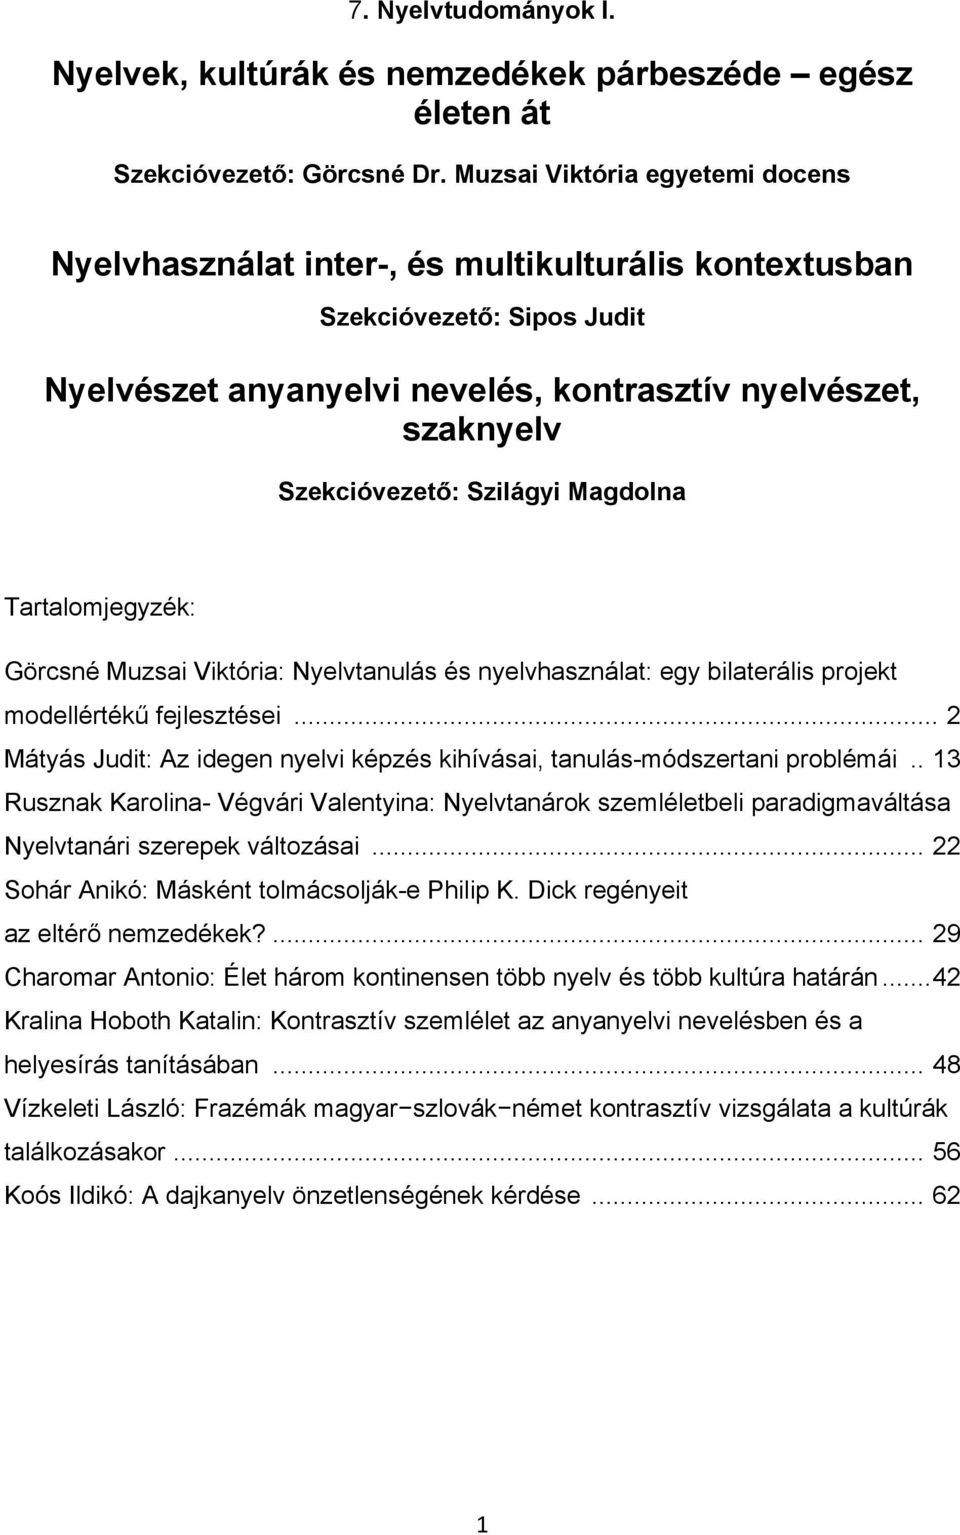 Szilágyi Magdolna Tartalomjegyzék: Görcsné Muzsai Viktória: Nyelvtanulás és nyelvhasználat: egy bilaterális projekt modellértékű fejlesztései.